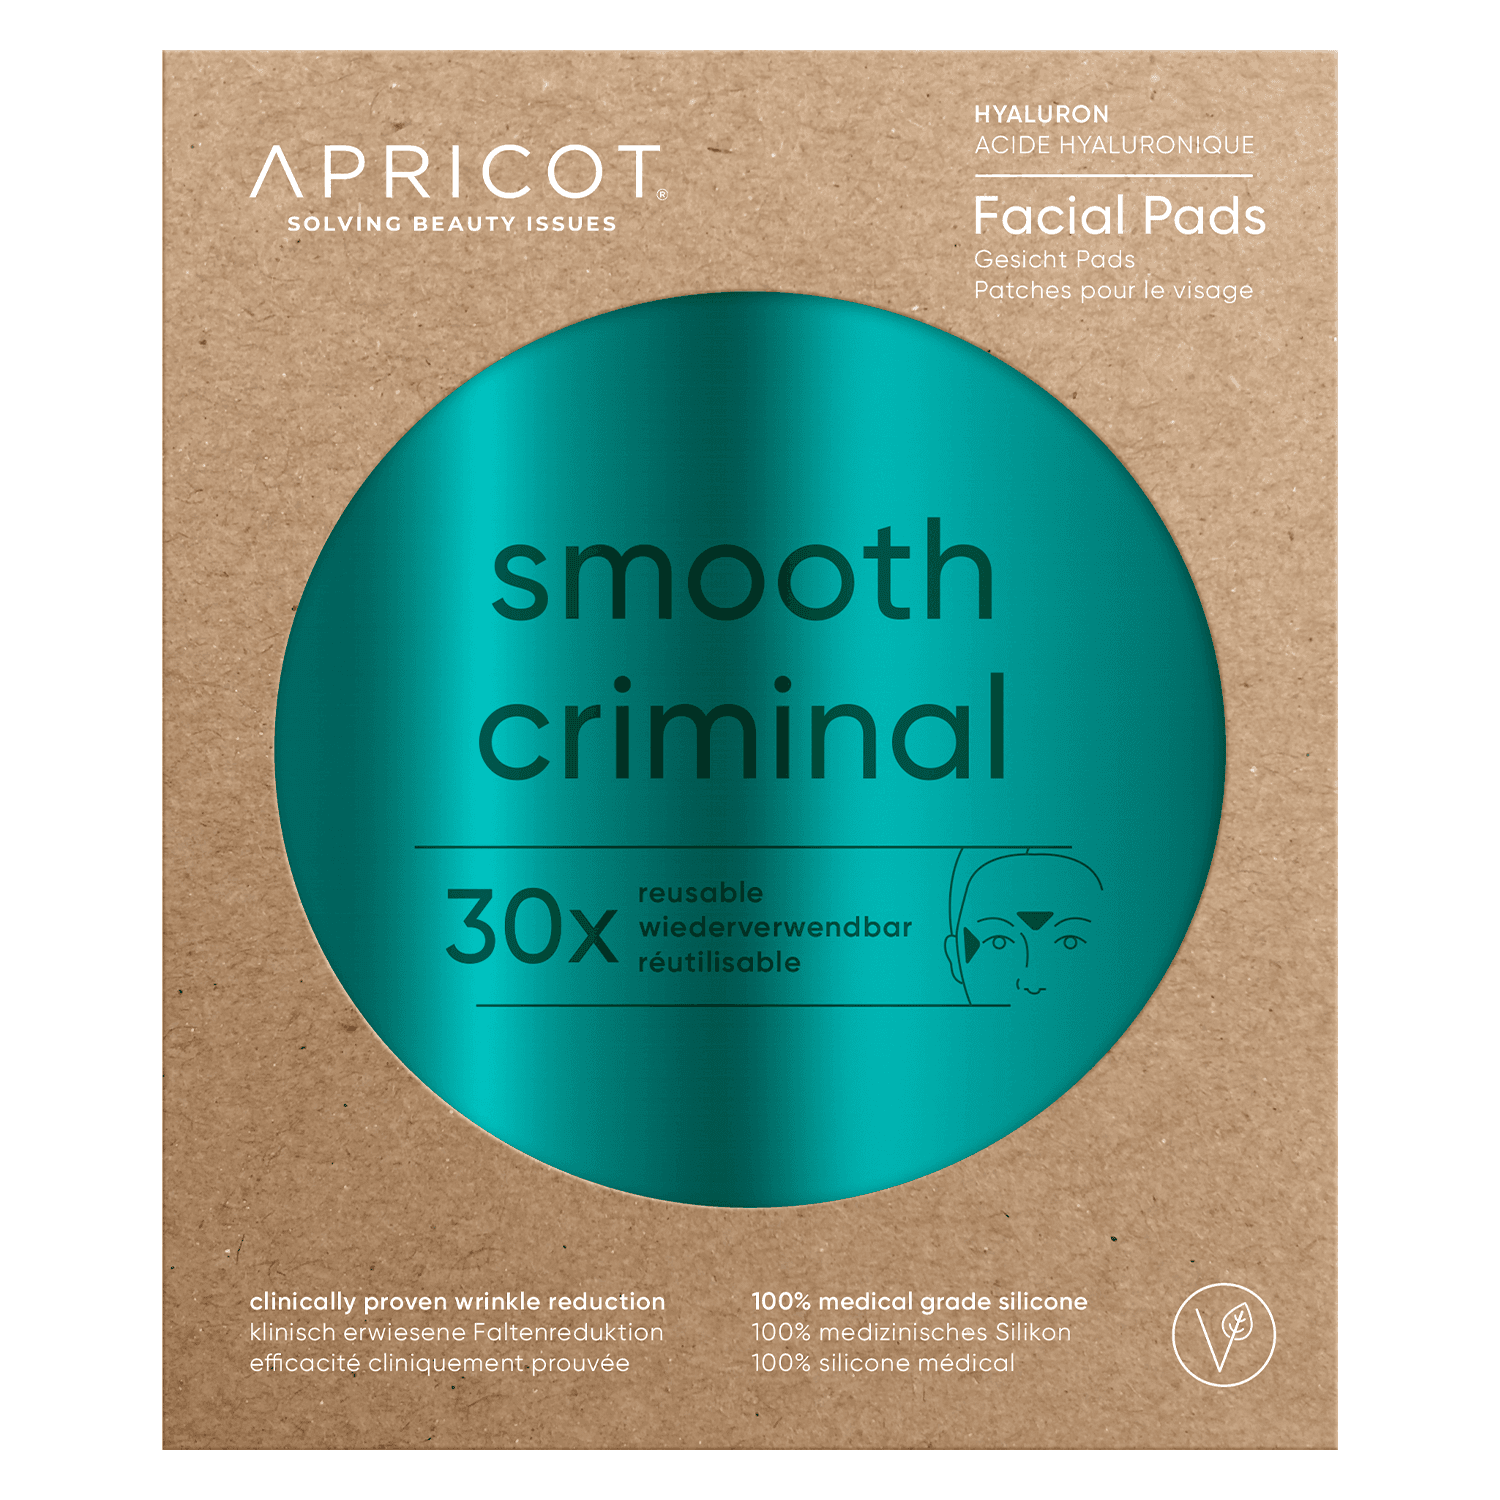 APRICOT - Reusable Facial Pads Smooth Criminal